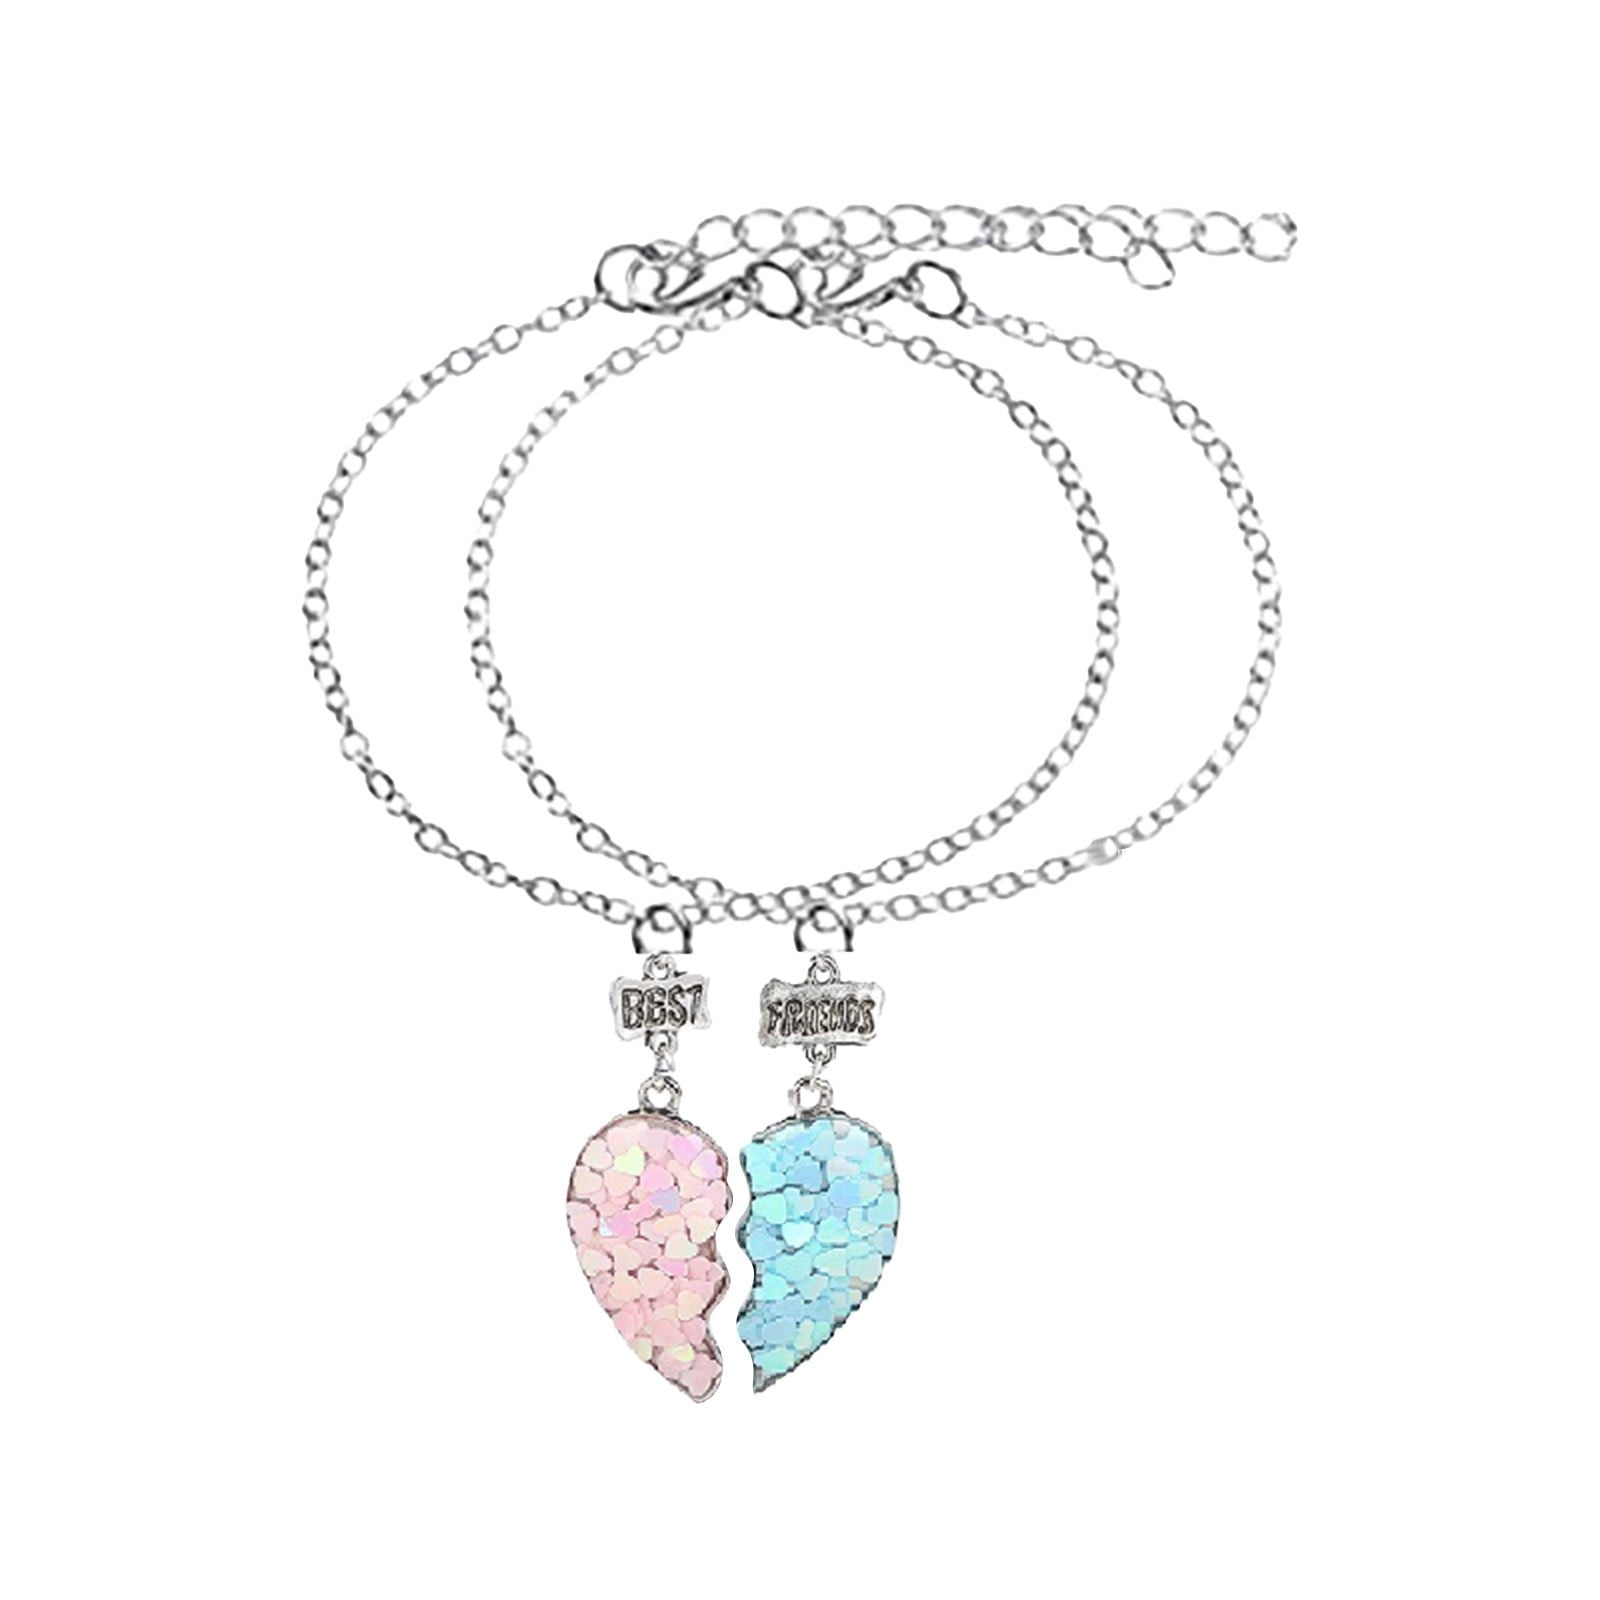 Best Friend Half Heart Bracelet Set for 2 - Metal and Free size - Best  Friend Jewelry